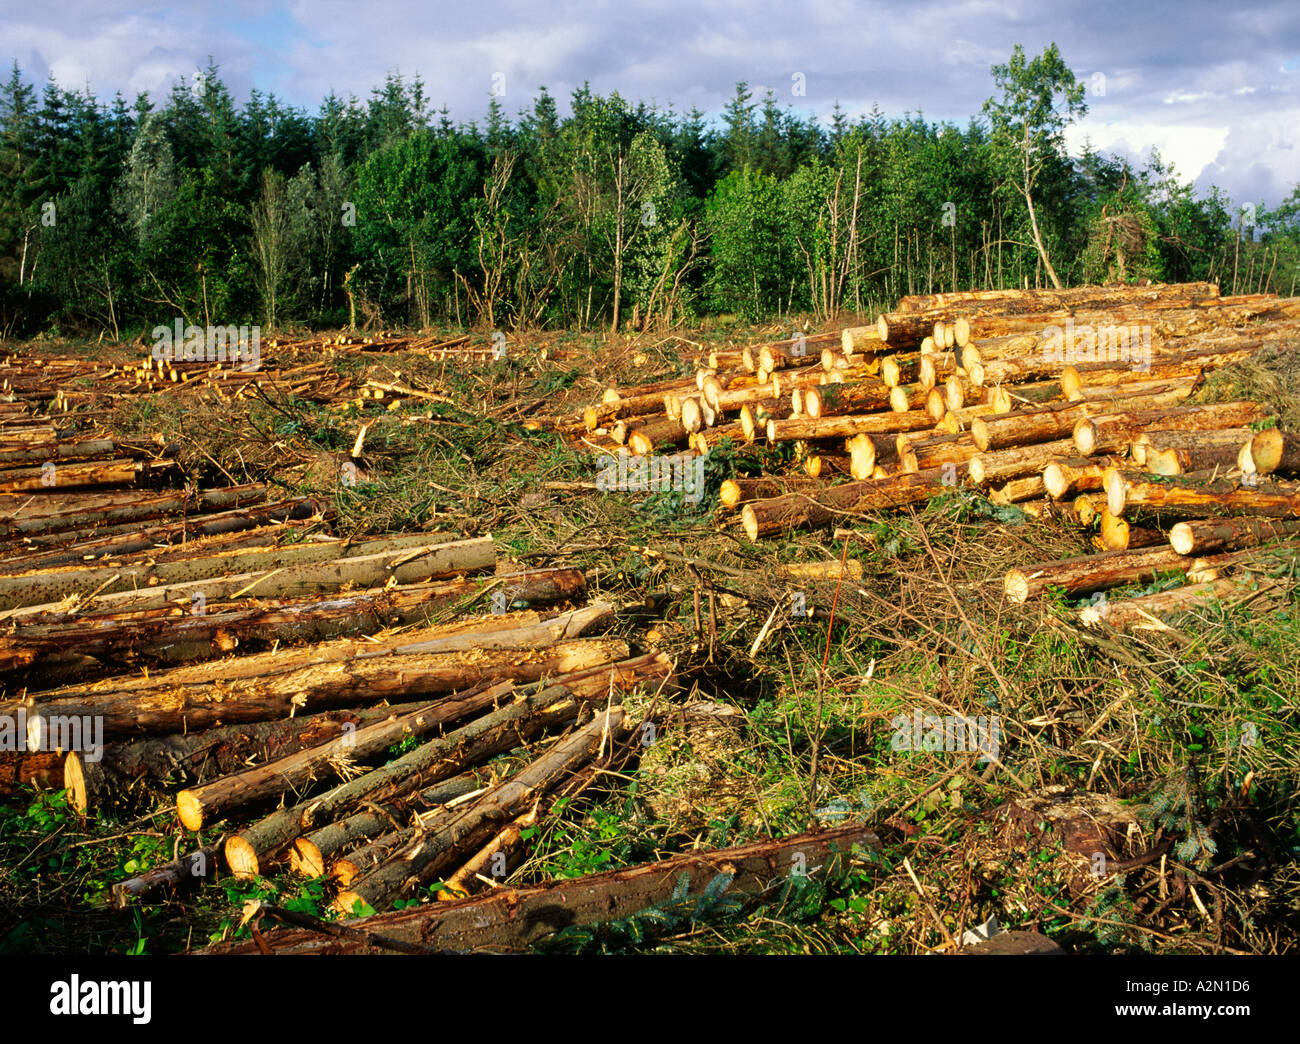 Junge Nadelholz industrielle Nadelbaum Protokollierung Forstwirtschaft Holz schneiden meldet sich im County Sligo, Irland Stockfoto